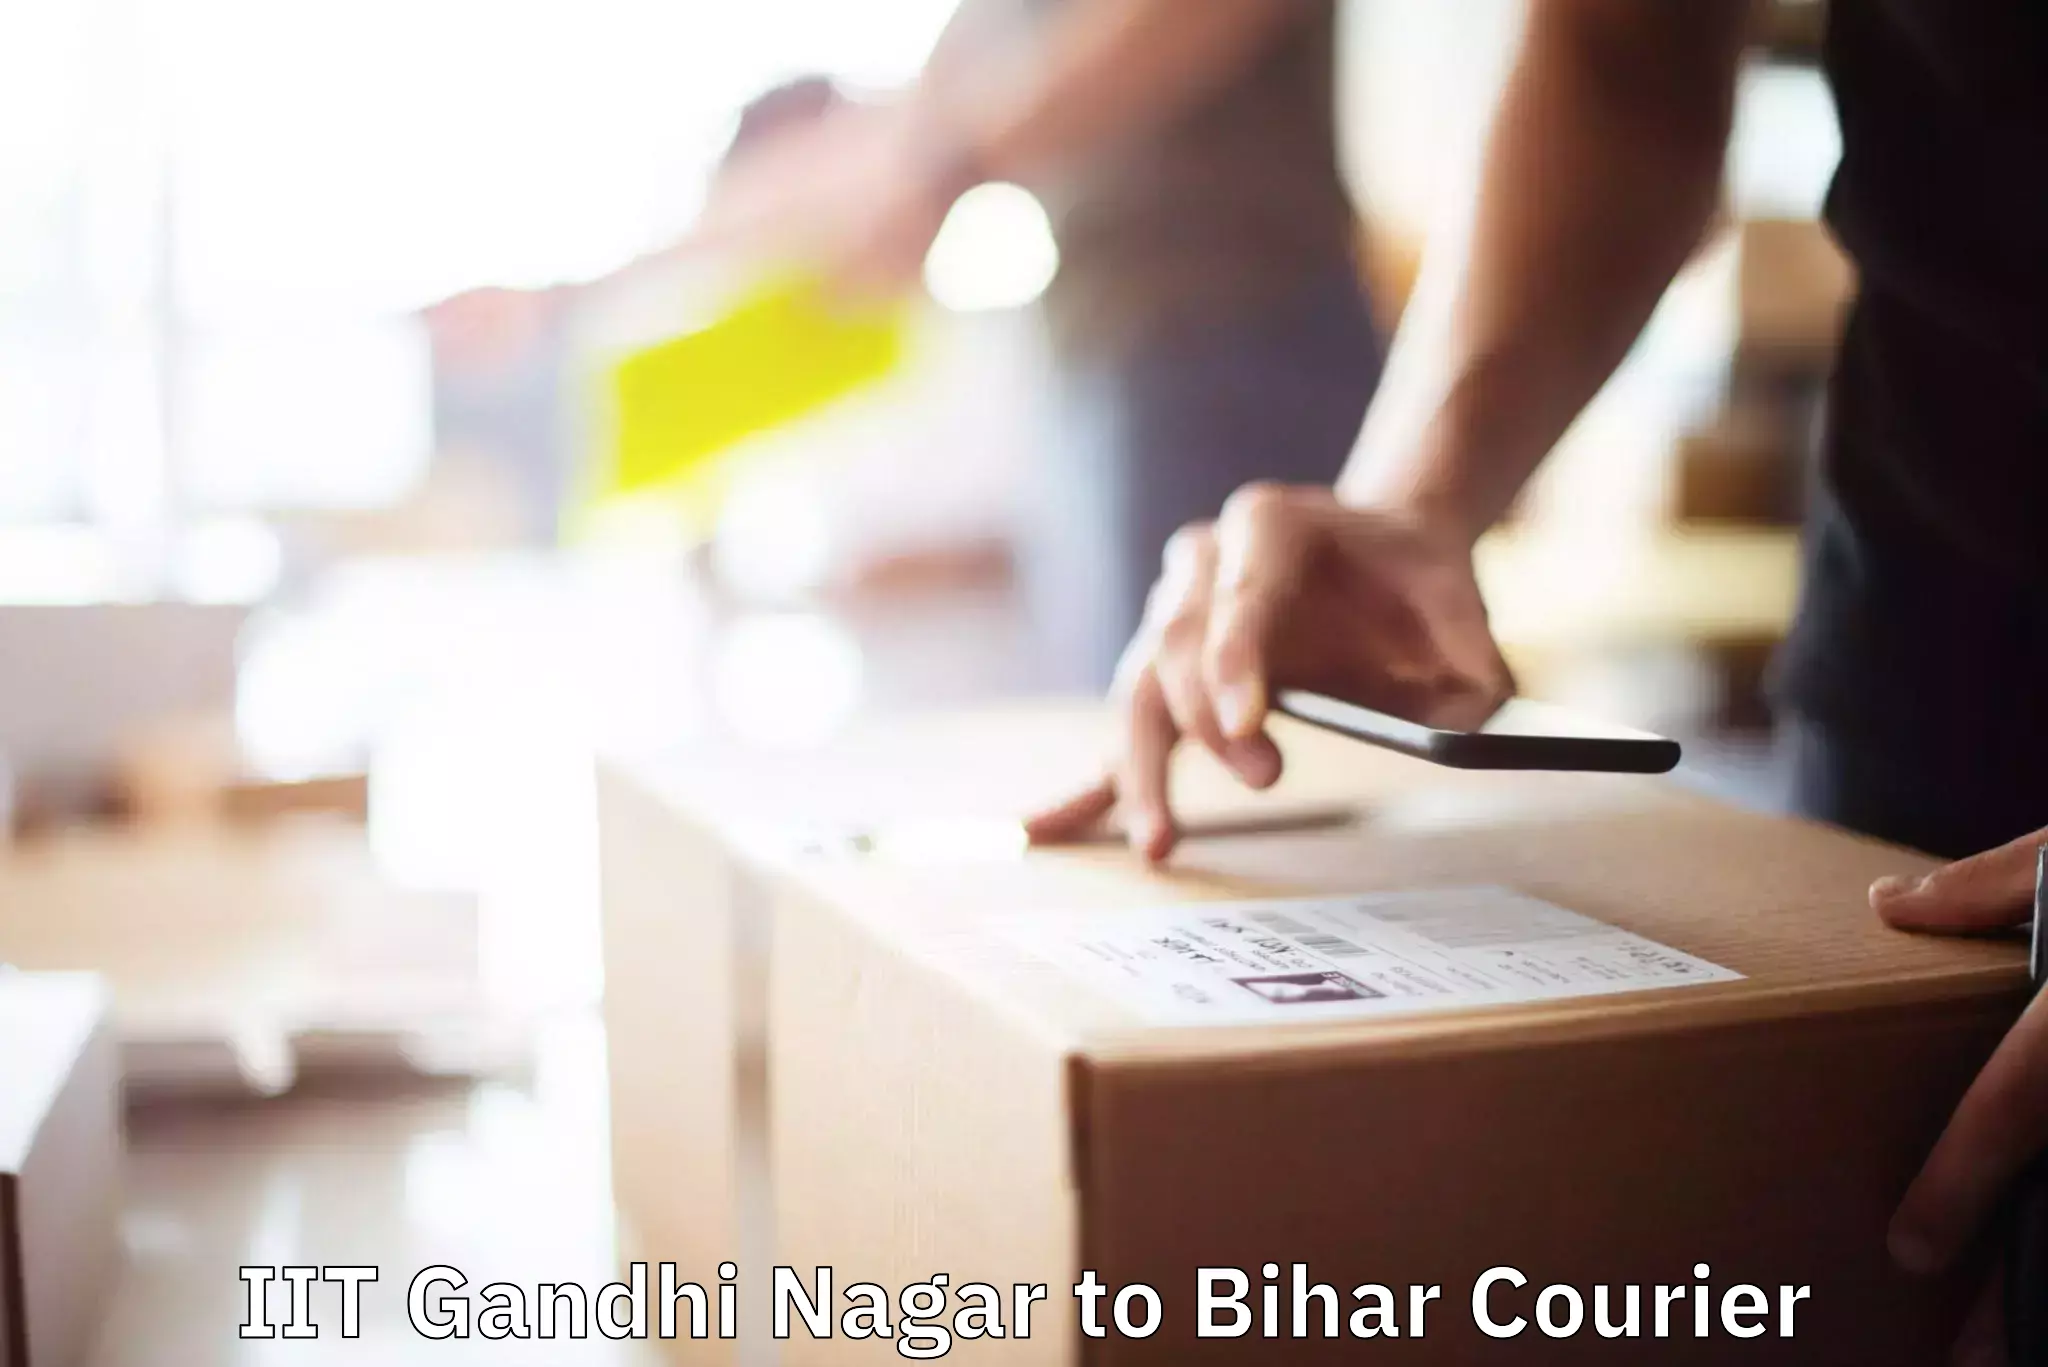 Residential moving experts IIT Gandhi Nagar to Bihar